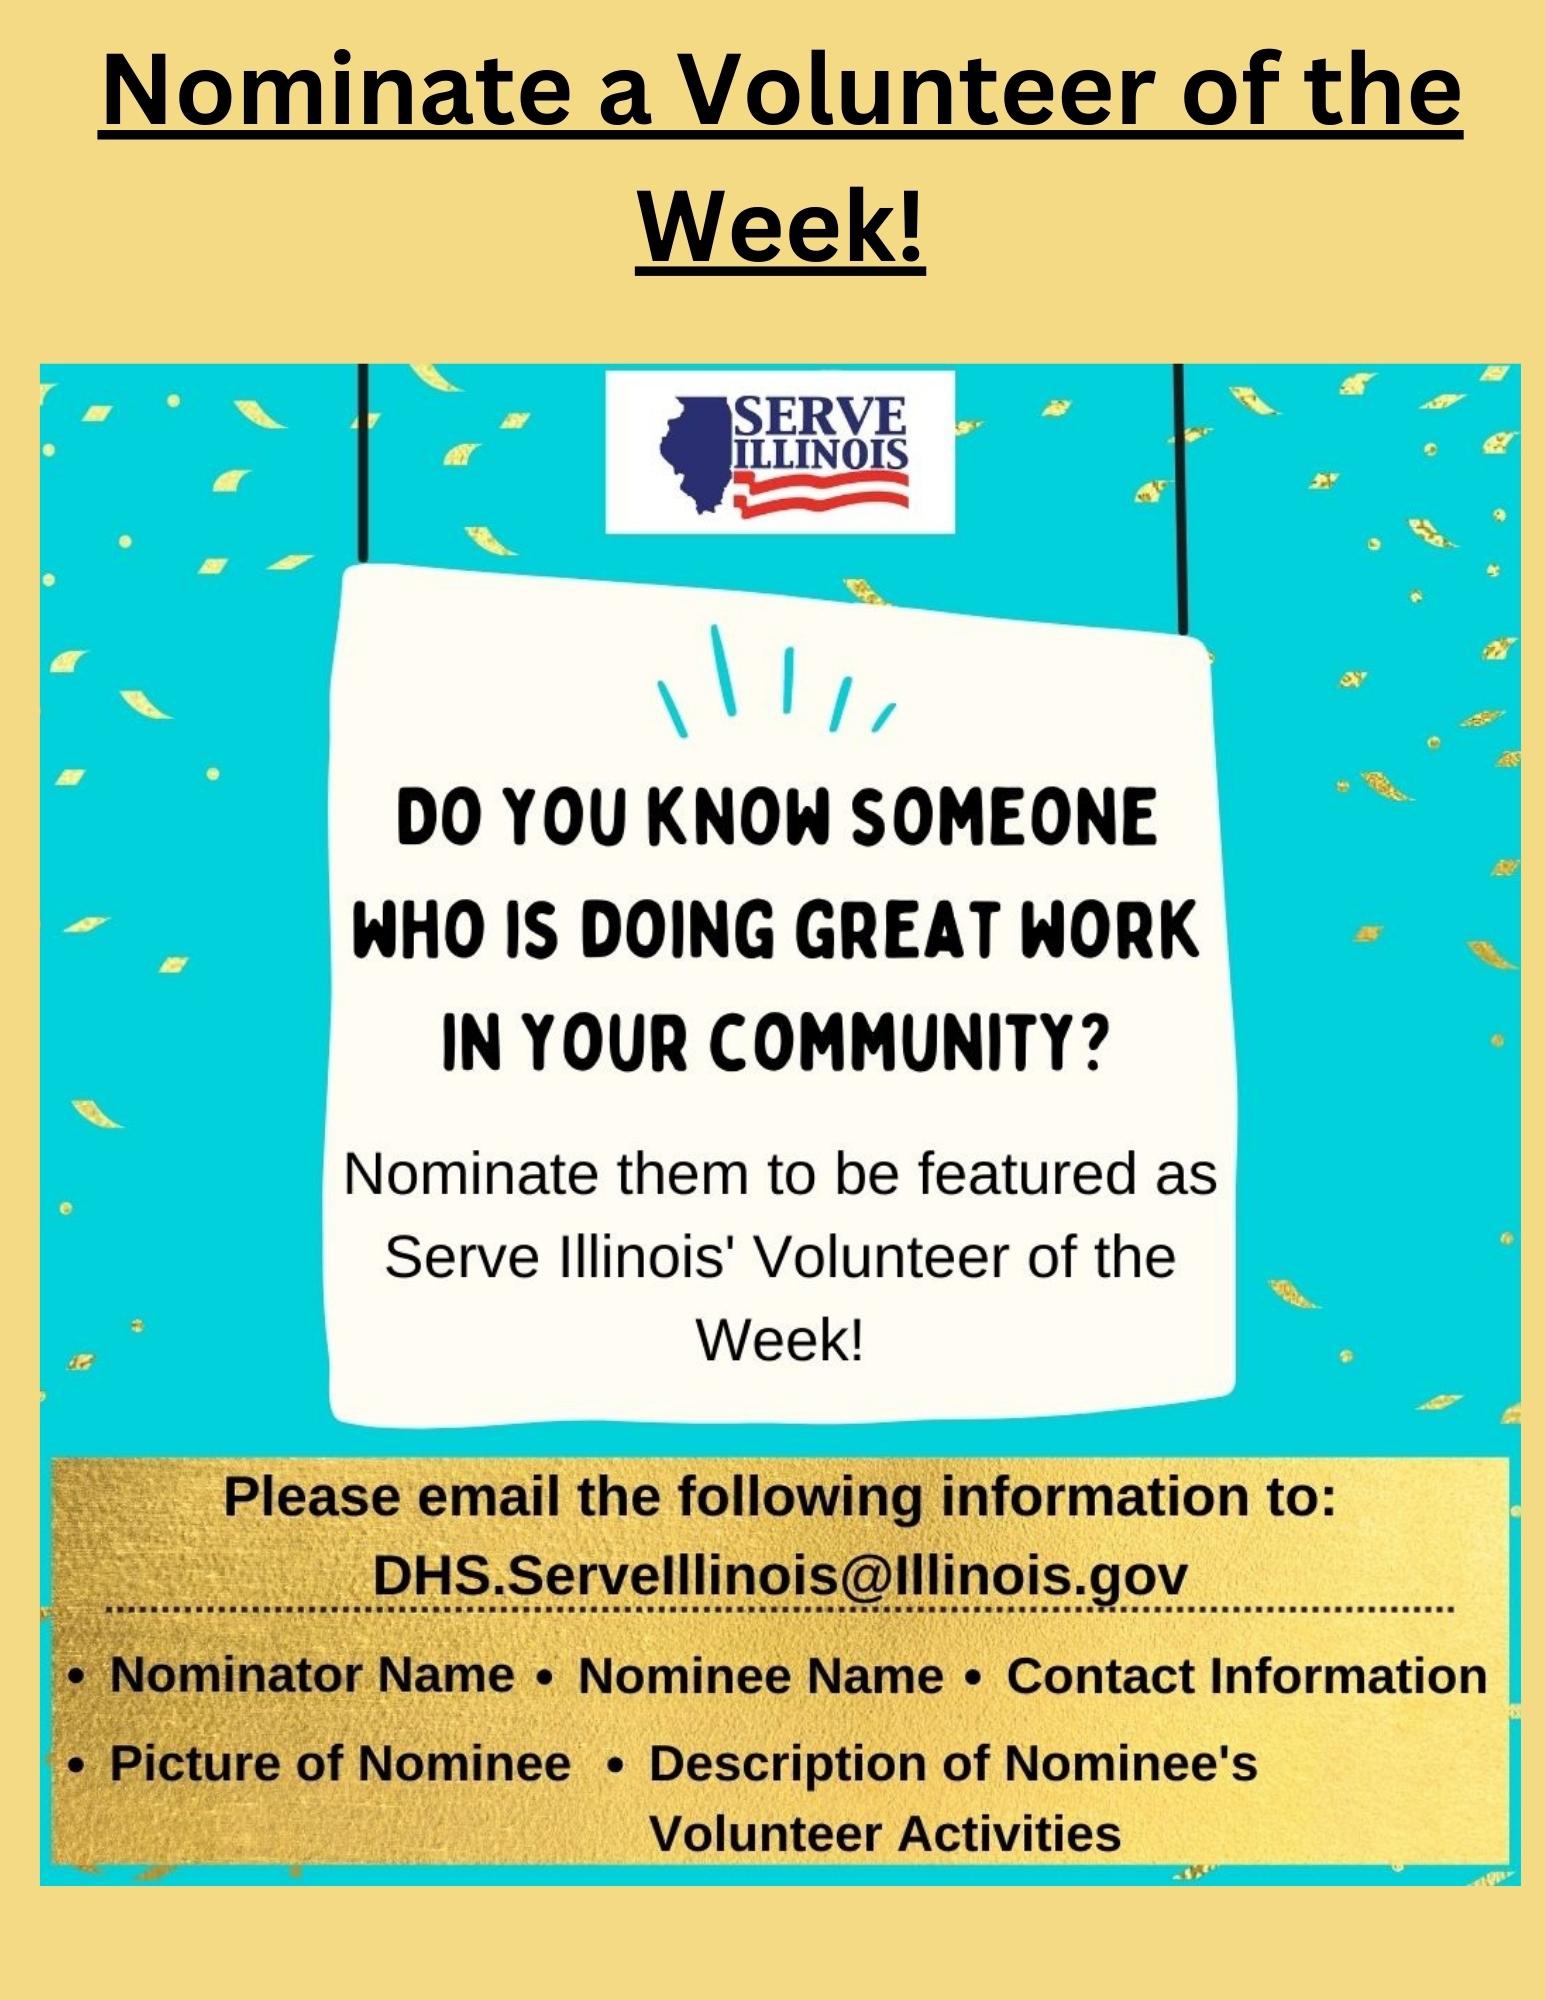 Nominate a Volunteer of the Week - 1